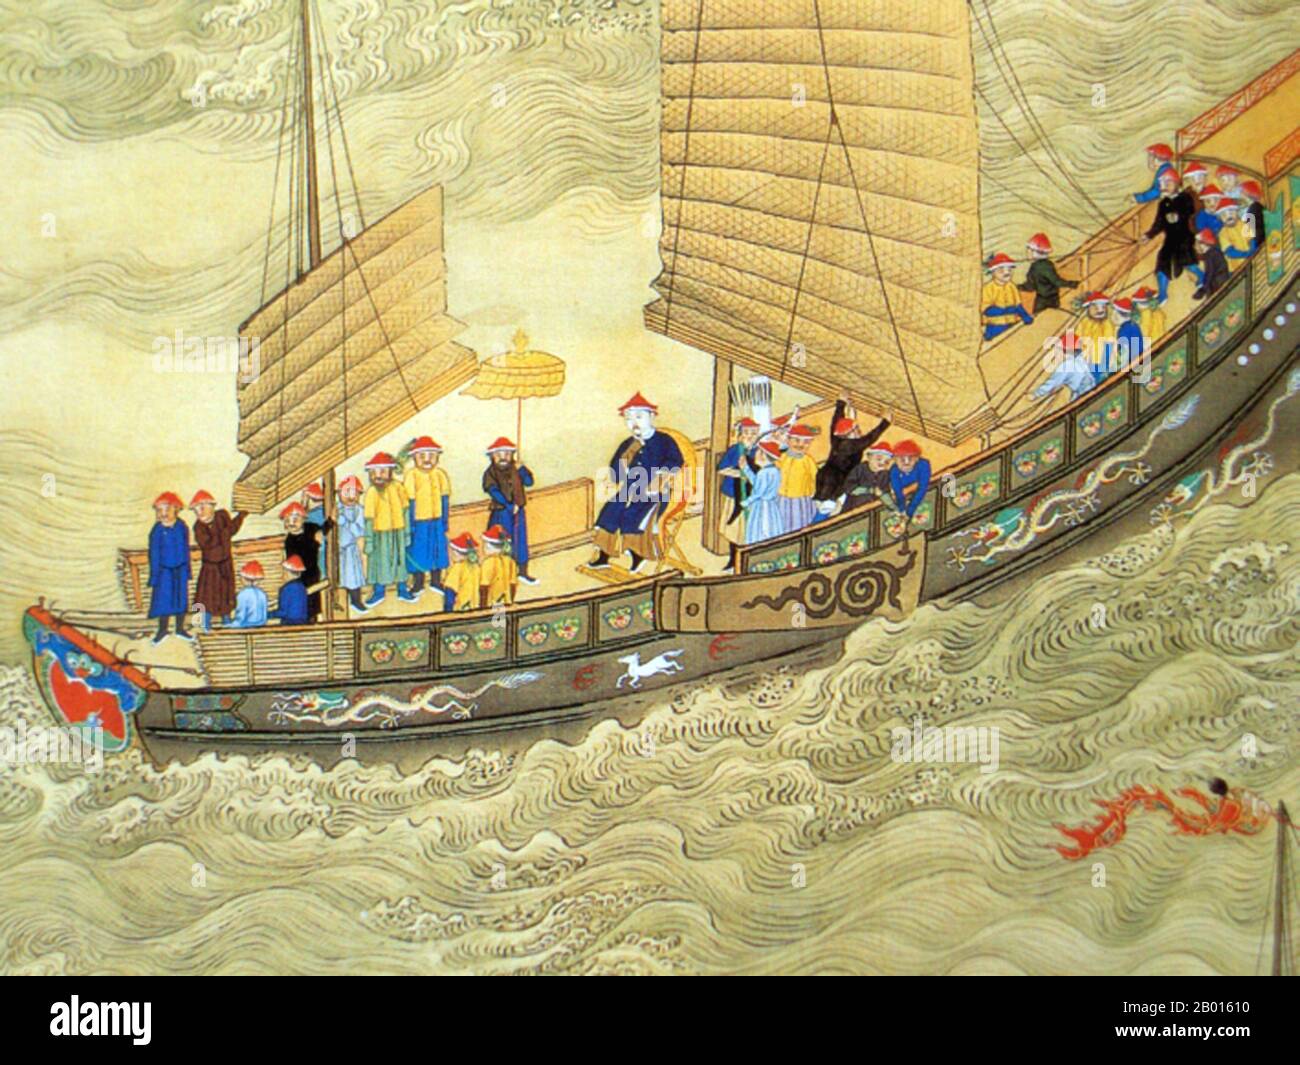 China: Der Kaiser von Kangxi auf Tournee. Detail der Handlauf-Malerei, Anfang des 18. Jahrhunderts. Kaiser Kangxi, persönlicher Name Xuanye und Tempelname Shengzu, war von 1661 bis 1722 der vierte Herrscher der Qing-Dynastie und der zweite Qing-Kaiser, der über das eigentliche China herrschte. Kangxis Herrschaft von 61 Jahren macht ihn zum am längsten regierenden chinesischen Kaiser der Geschichte (obwohl sein Enkel, der Kaiser Qianlong, die längste Periode der De-facto-Macht hatte) und zu einem der am längsten regierenden Herrscher der Welt. Er galt als einer der größten Kaiser Chinas. Stockfoto